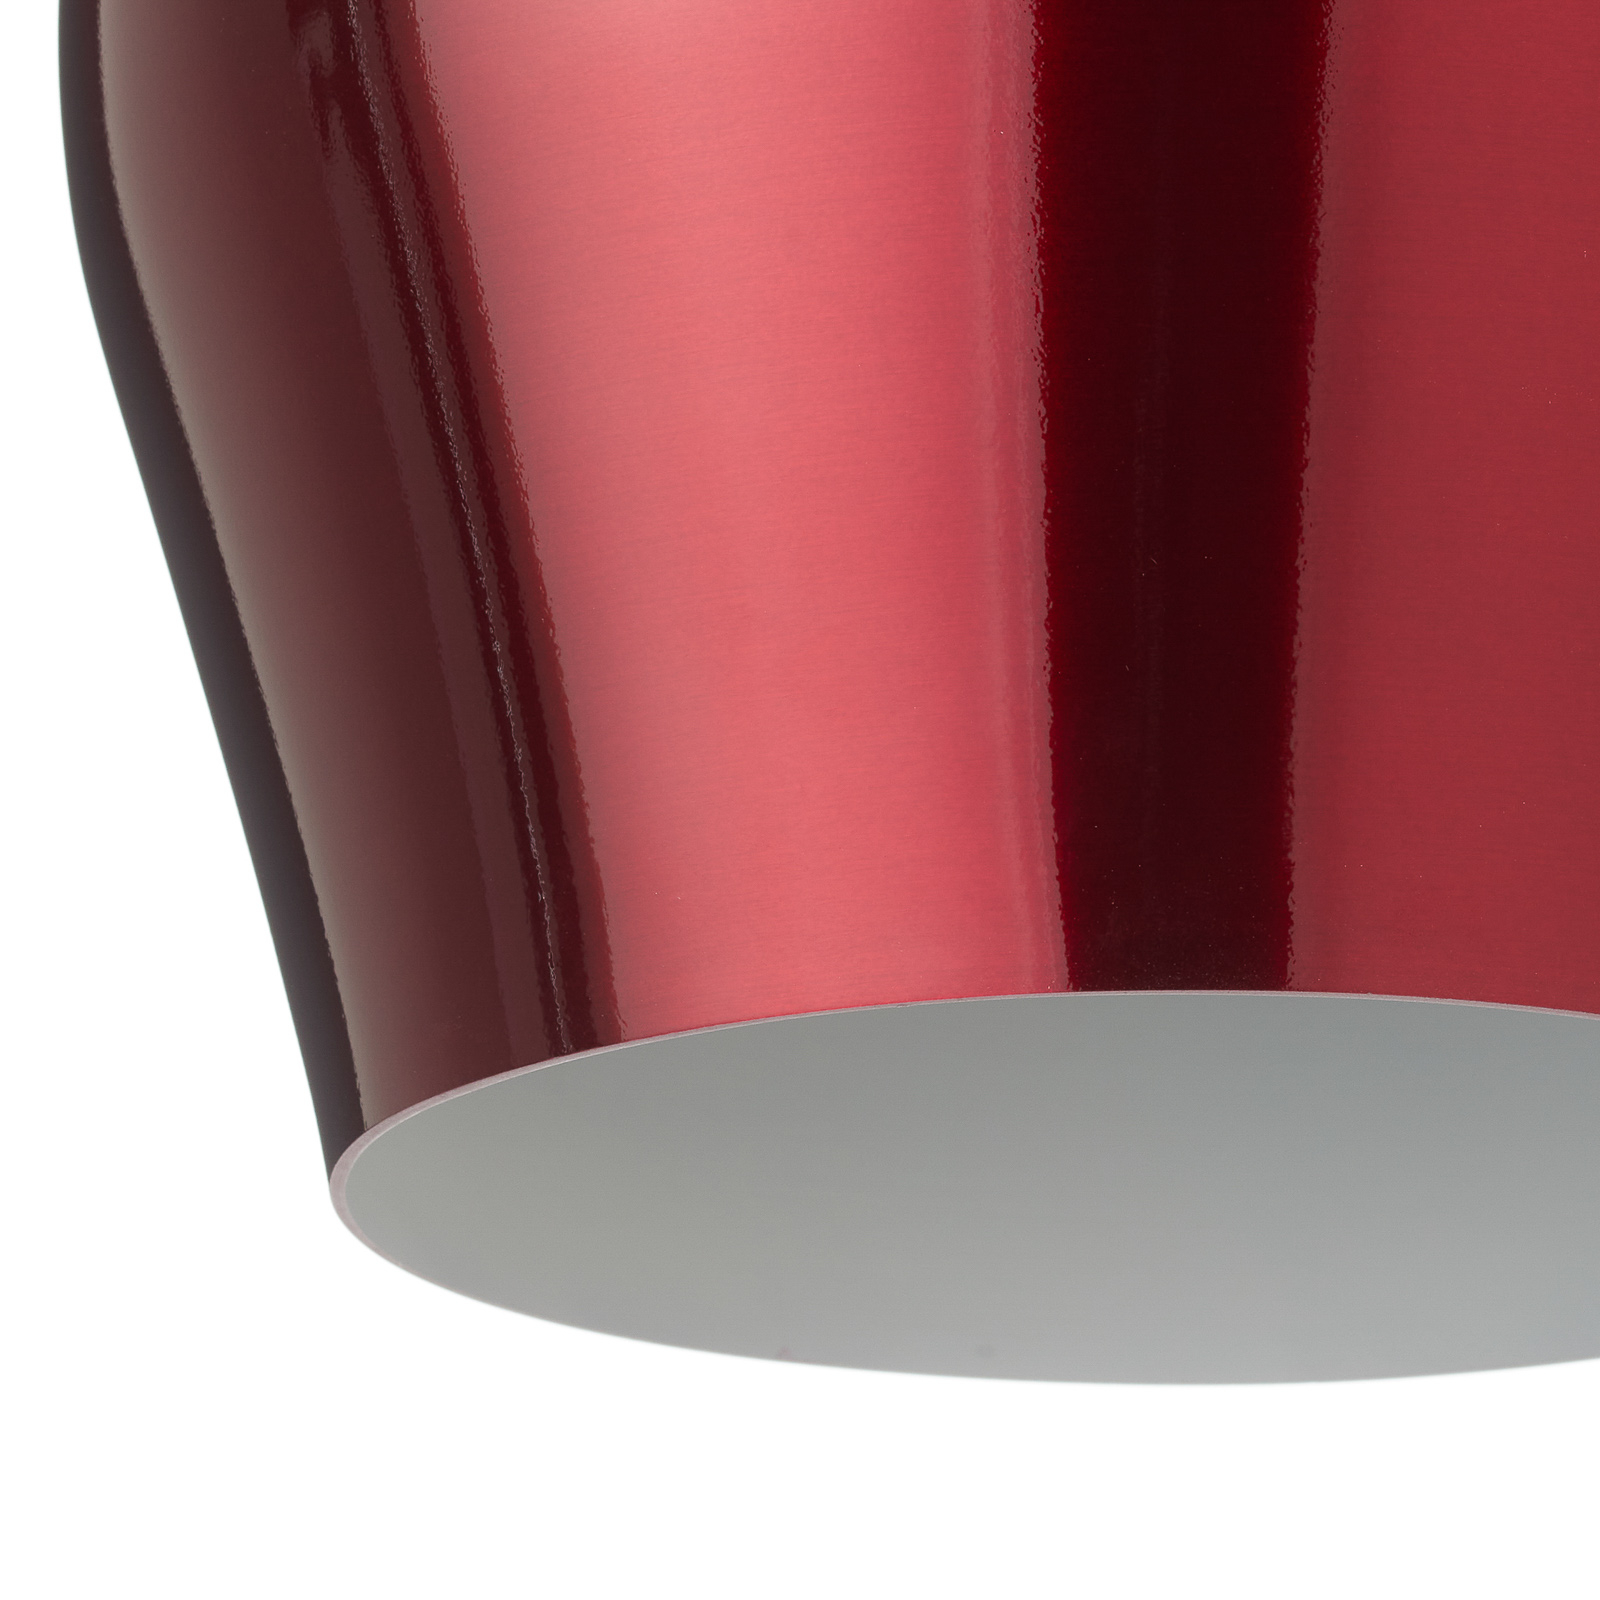 Függő lámpa Vibrant Ø 26 cm, piros